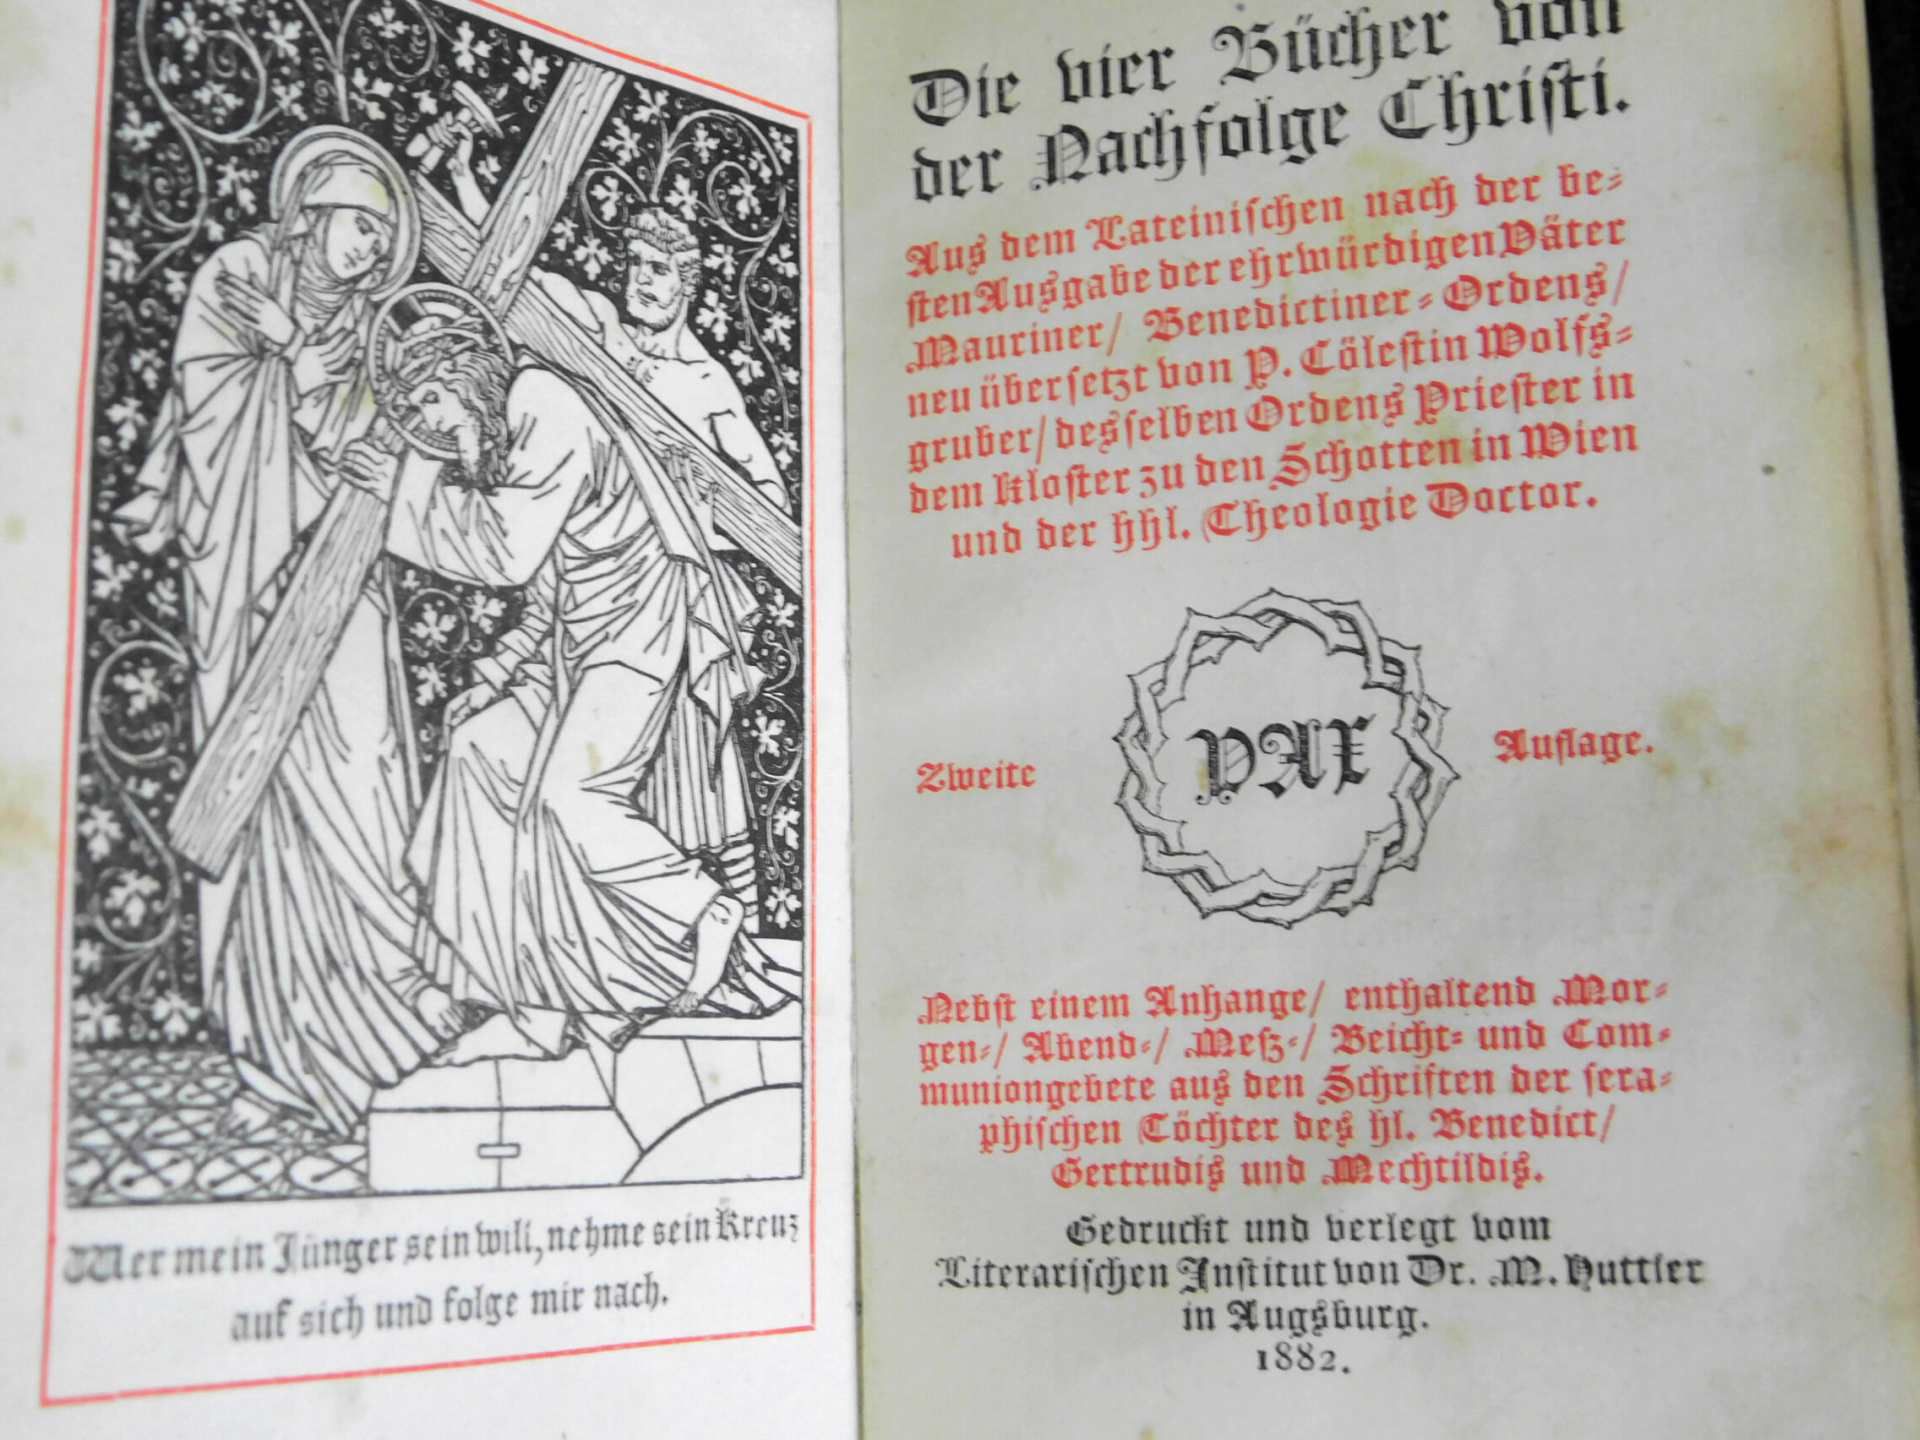 Buch "Nachfolge Christi", Druck und Verlag literarisches Institut Dr.M. Nuttier, Augsburg 1882, - Bild 3 aus 4